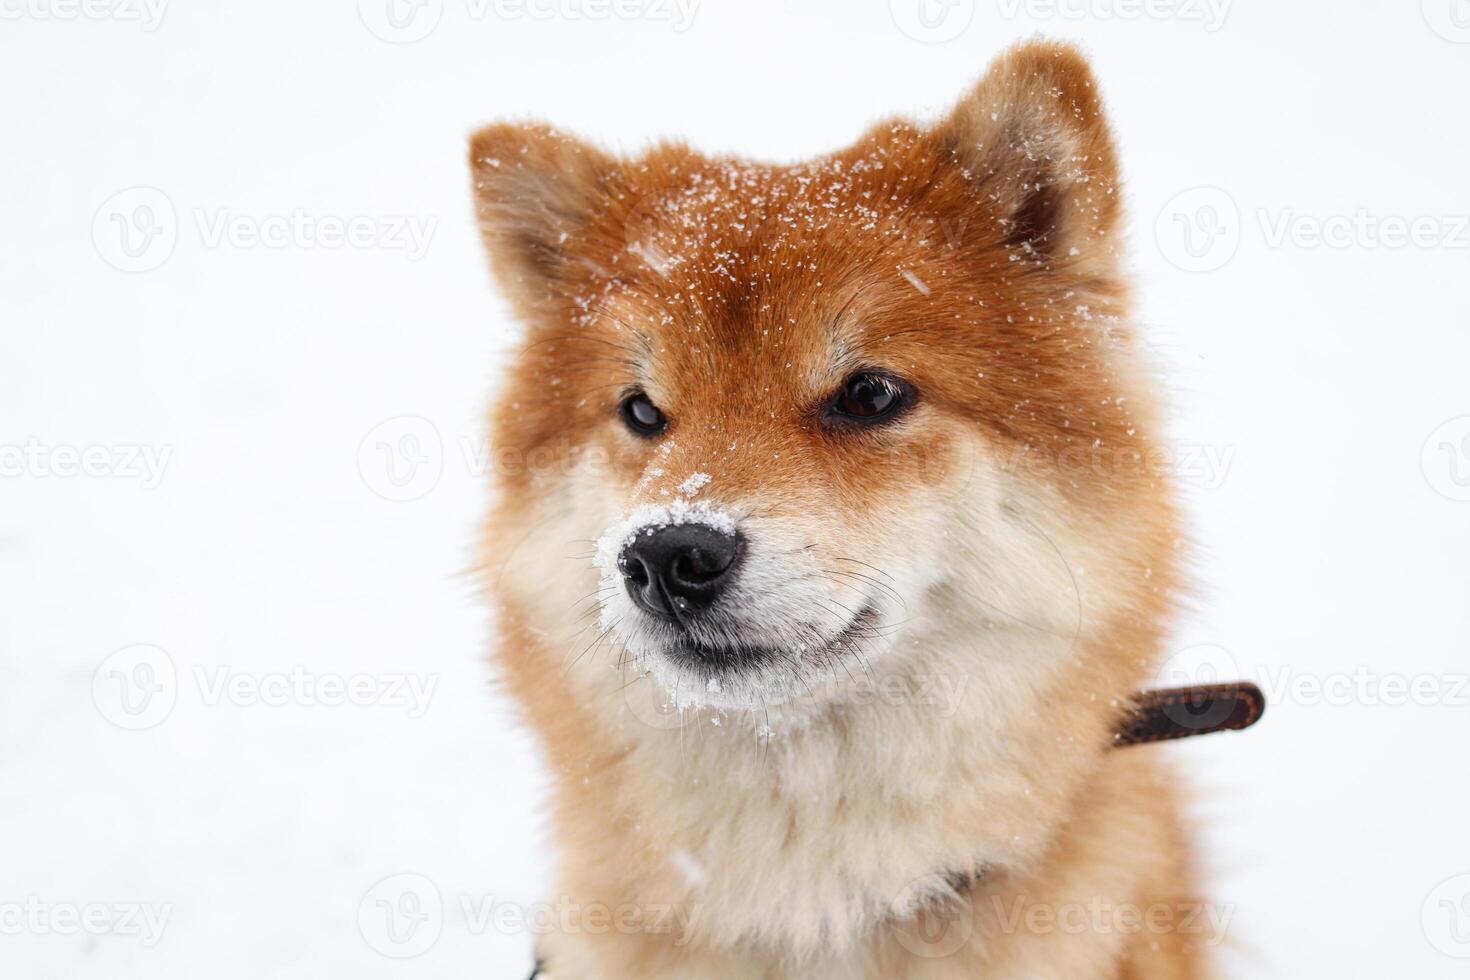 shiba inu chien dans le neige. chien portrait. mignonne duveteux chien photo